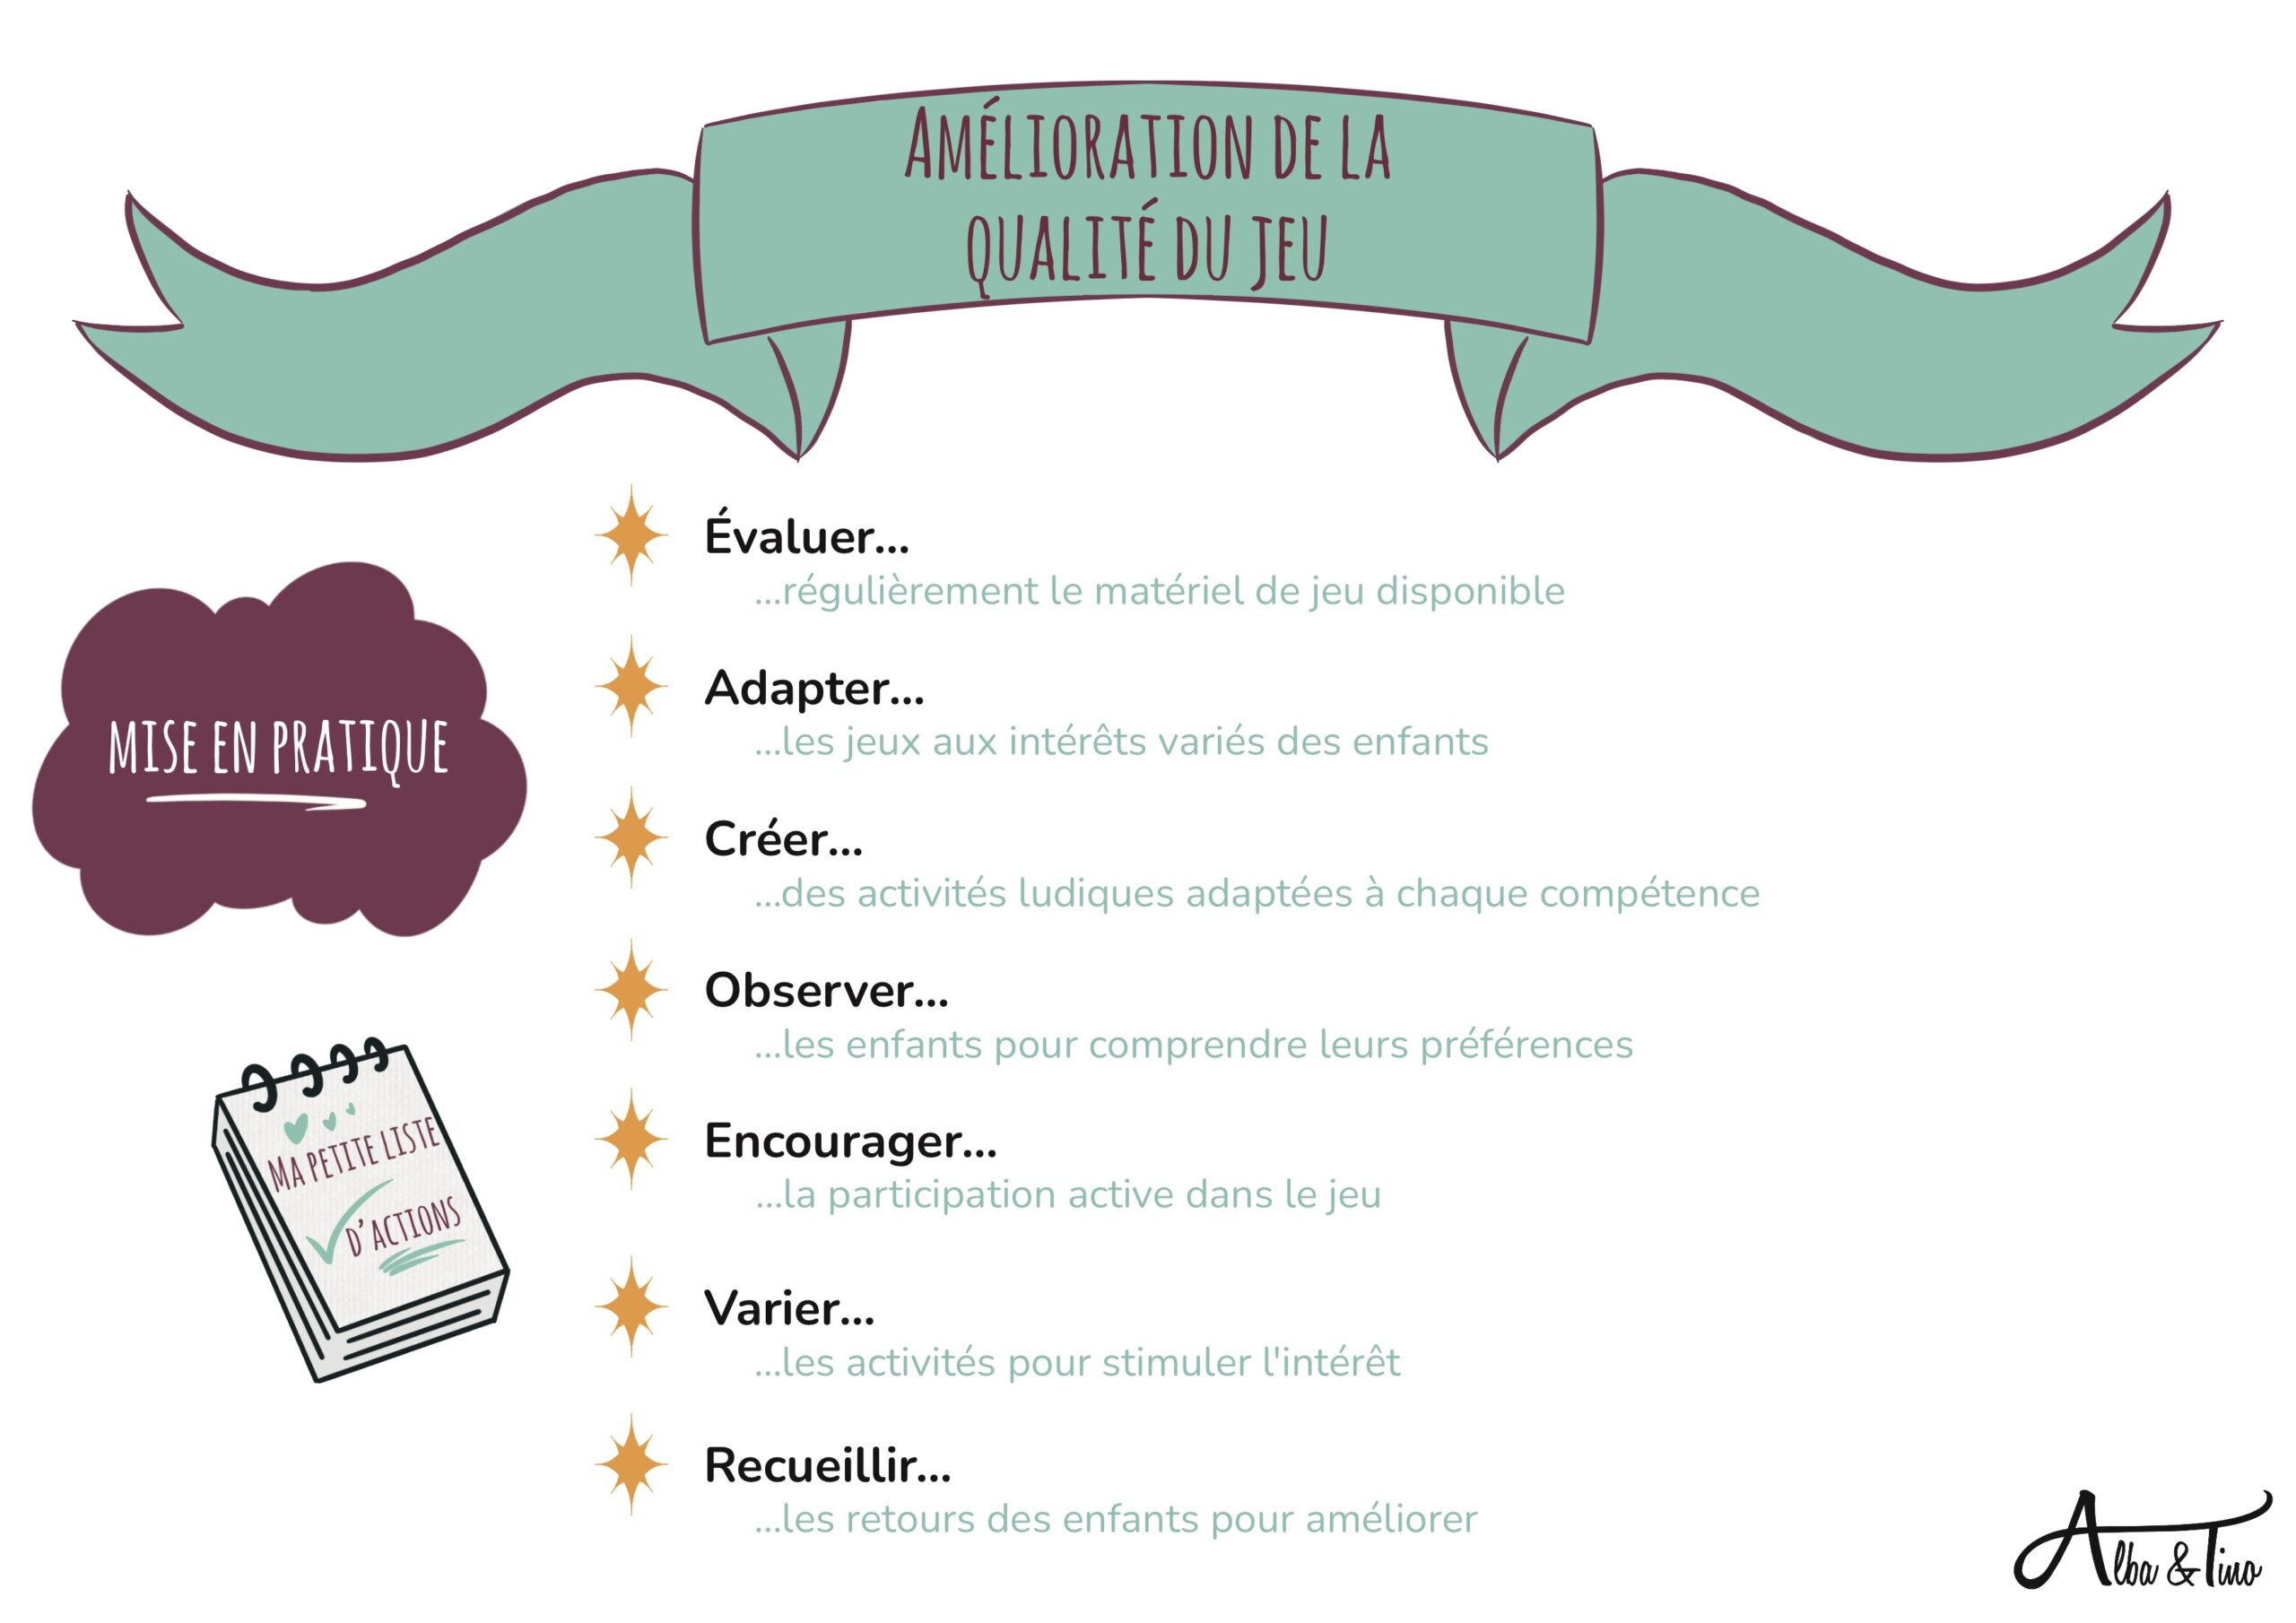 Amelioration_De_La_Qualite_Du_Jeu